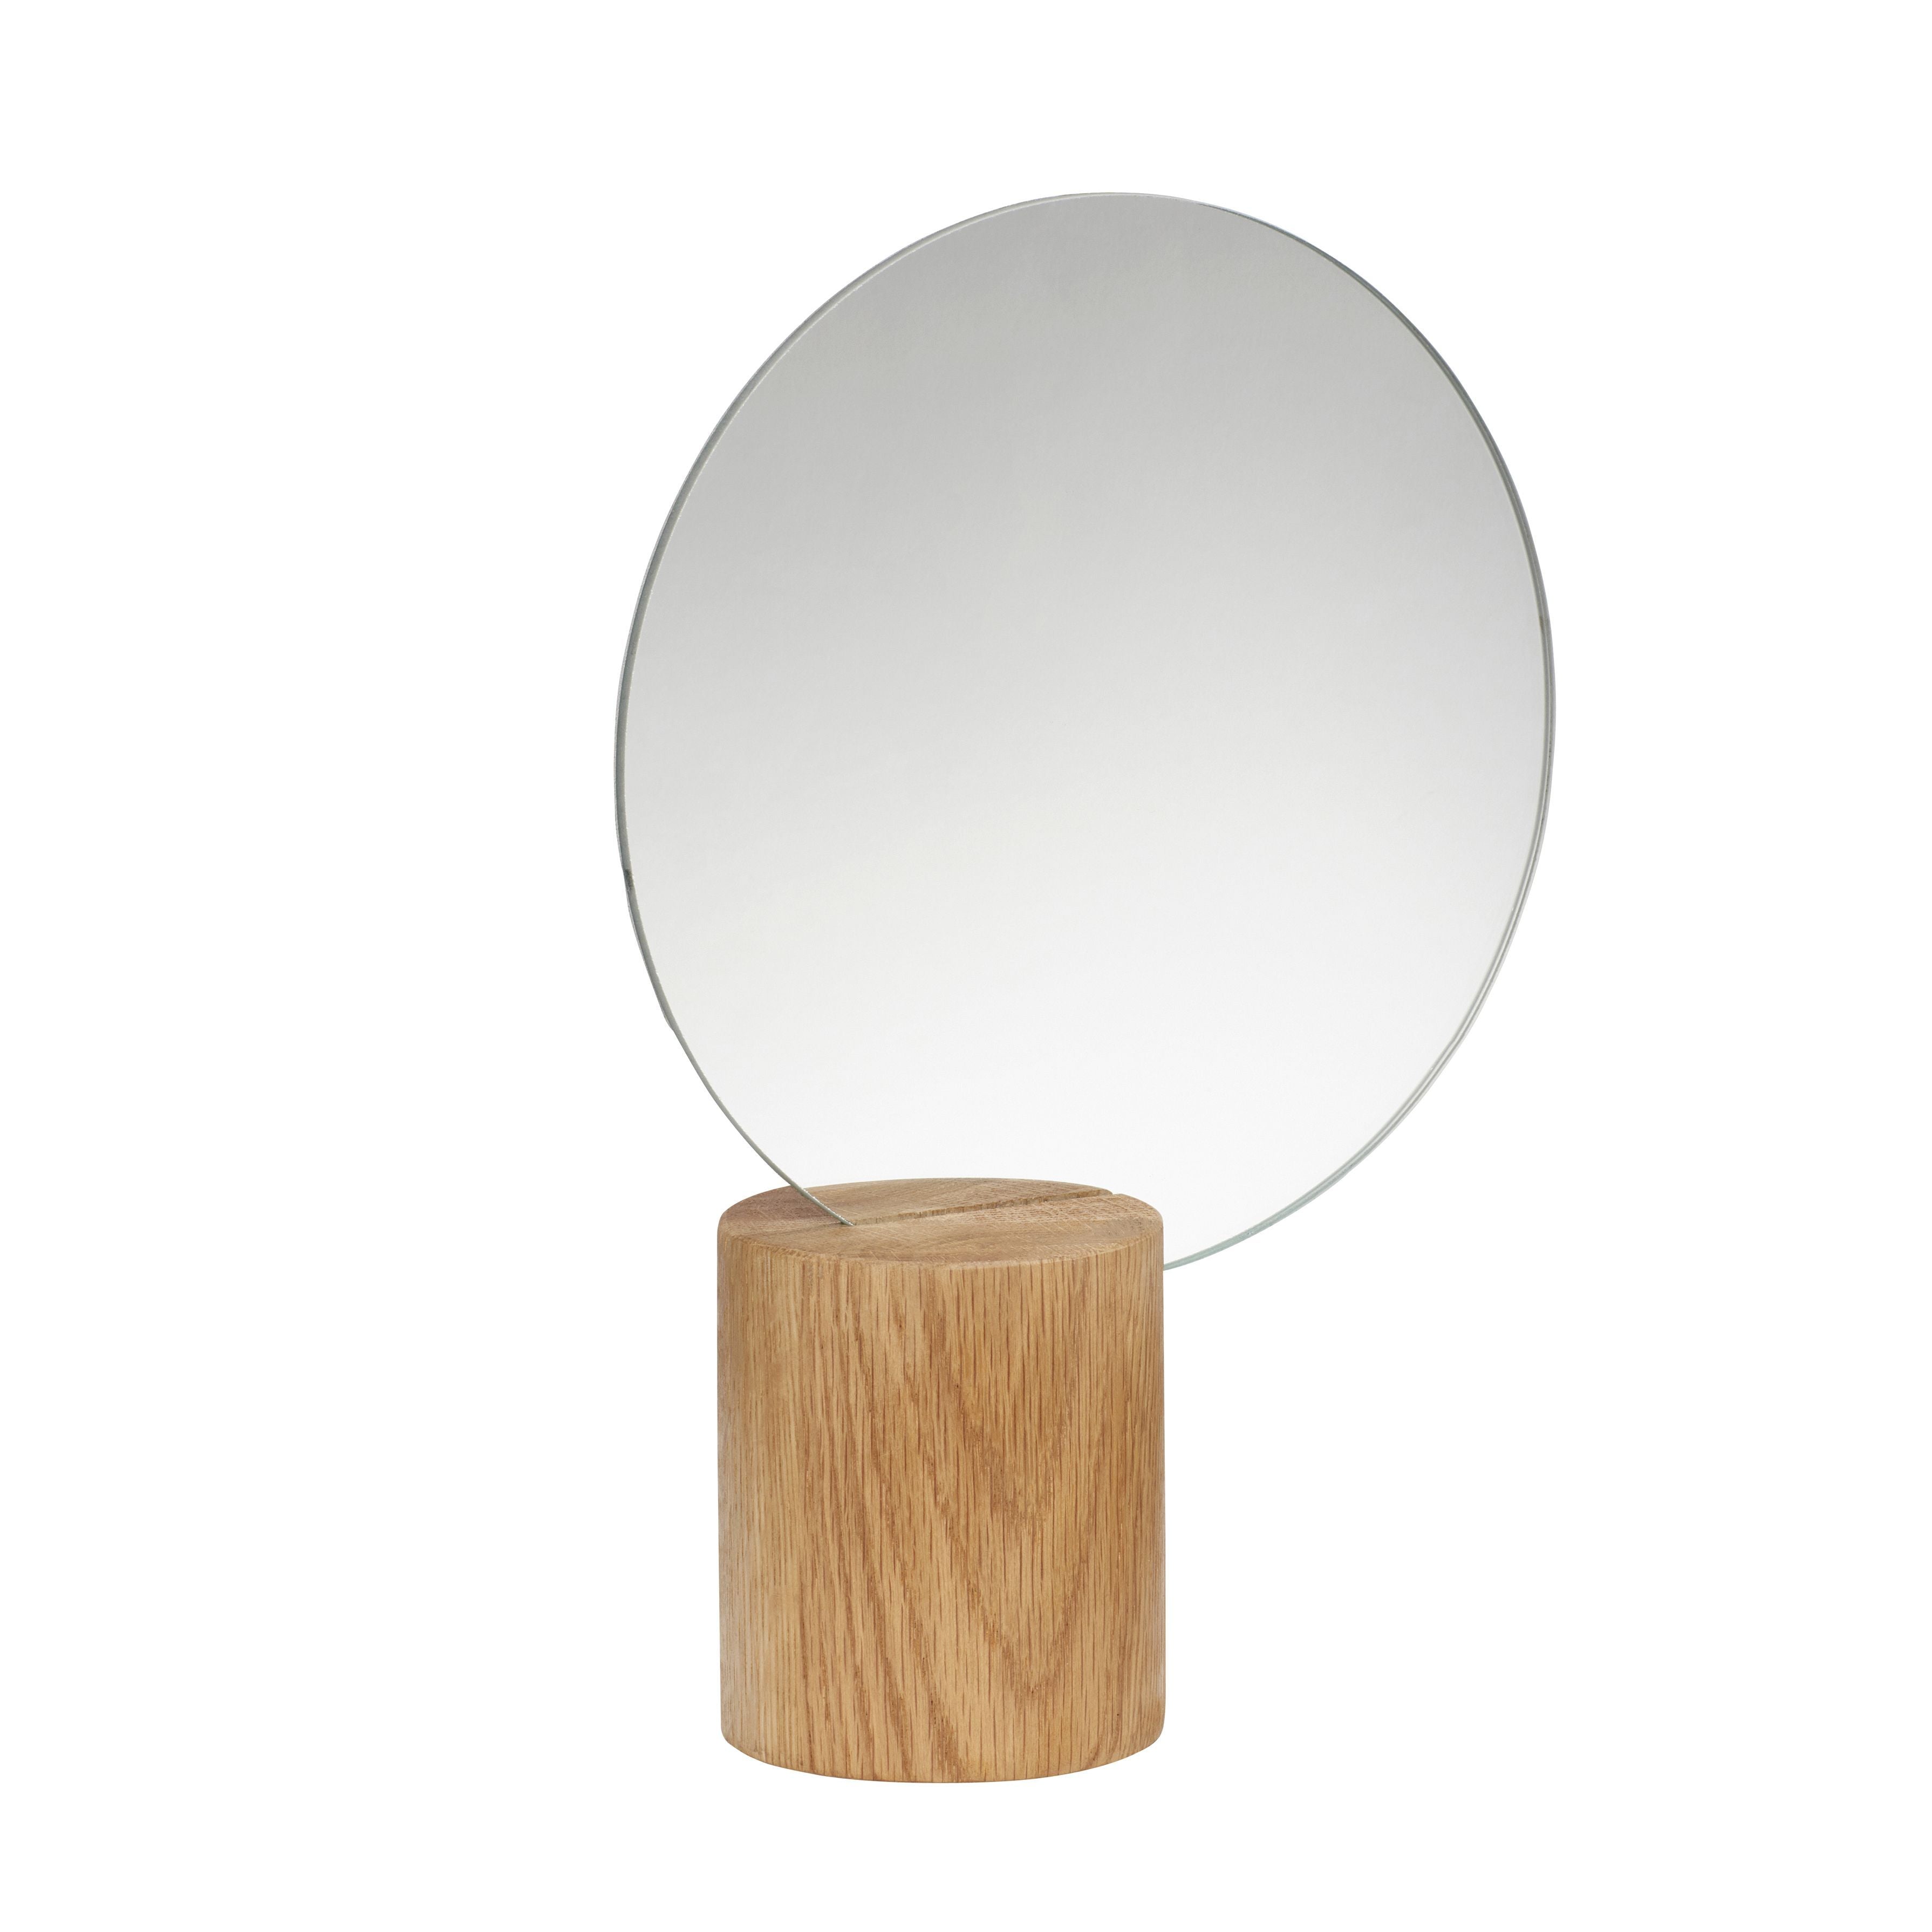 Hübsch Kantbord spegel trä naturlig runda